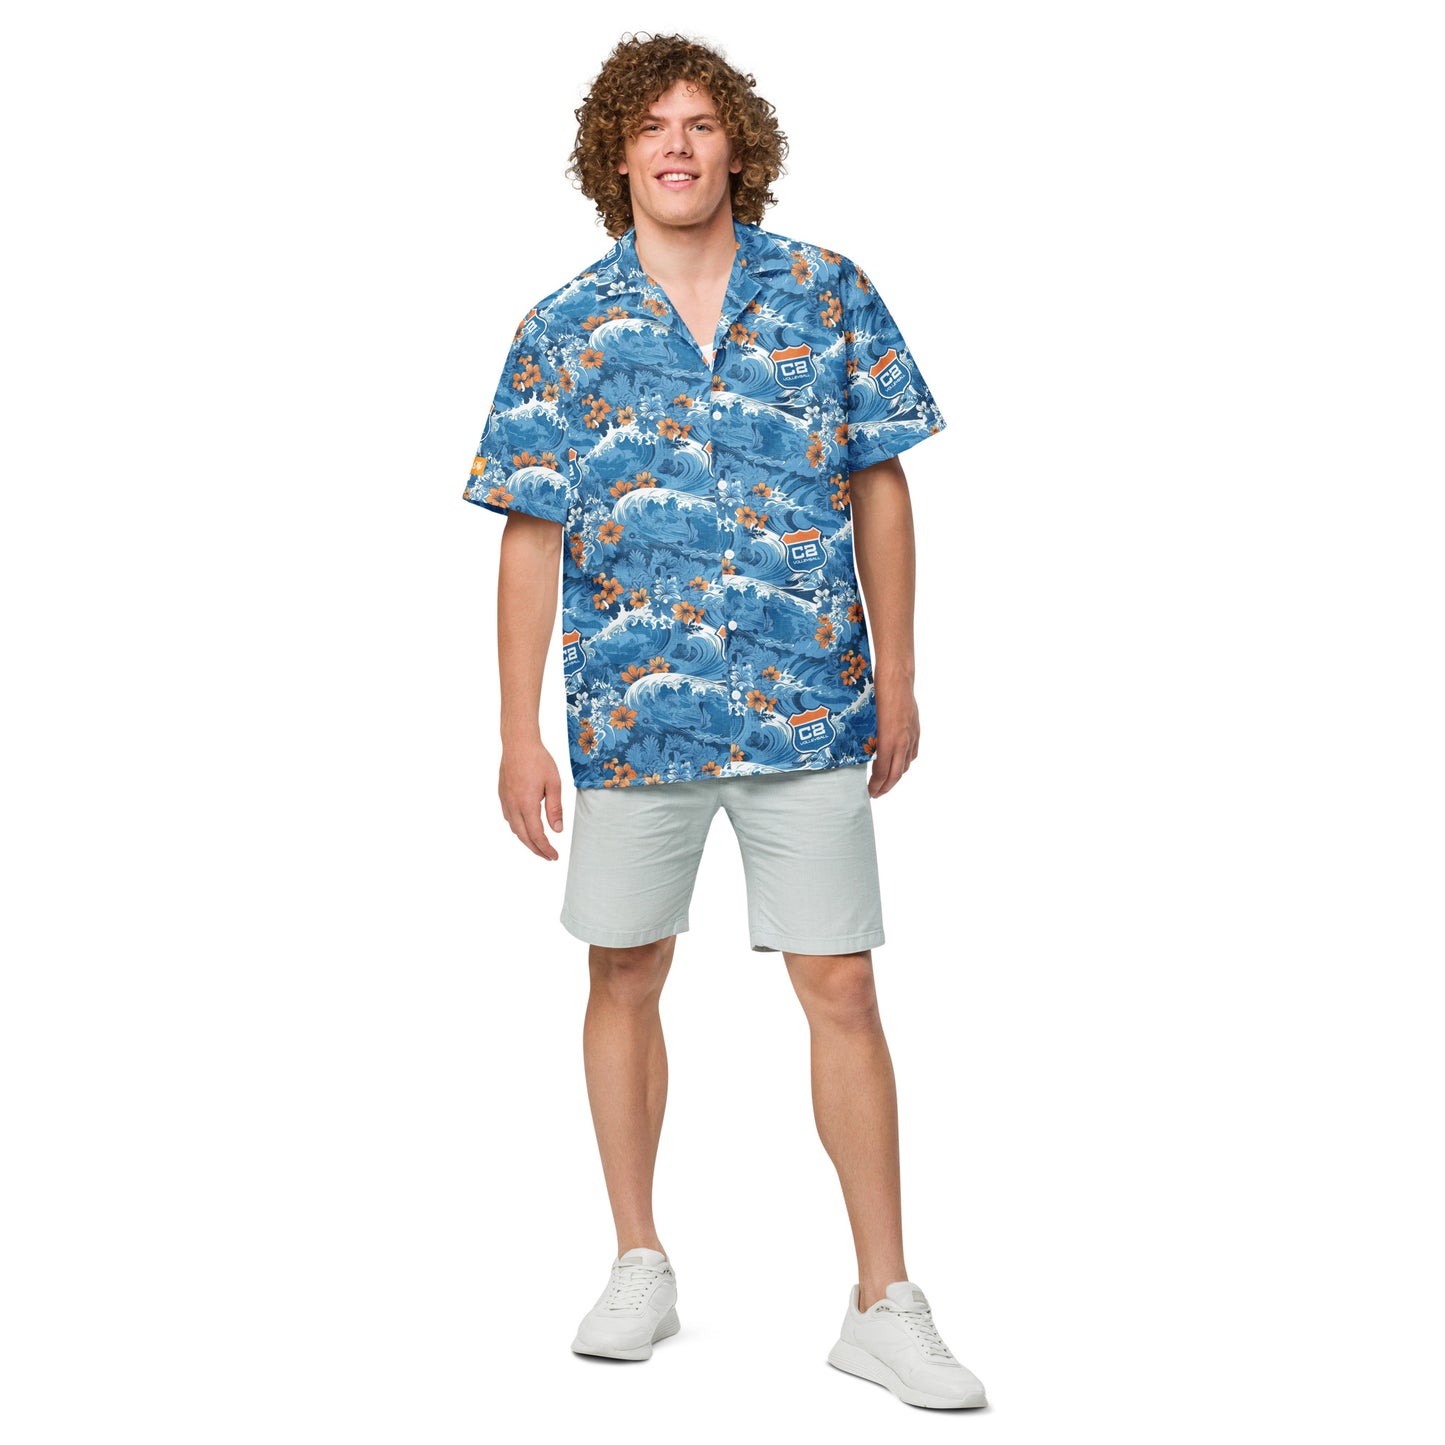 C2 Makin' Waves Aloha Shirt